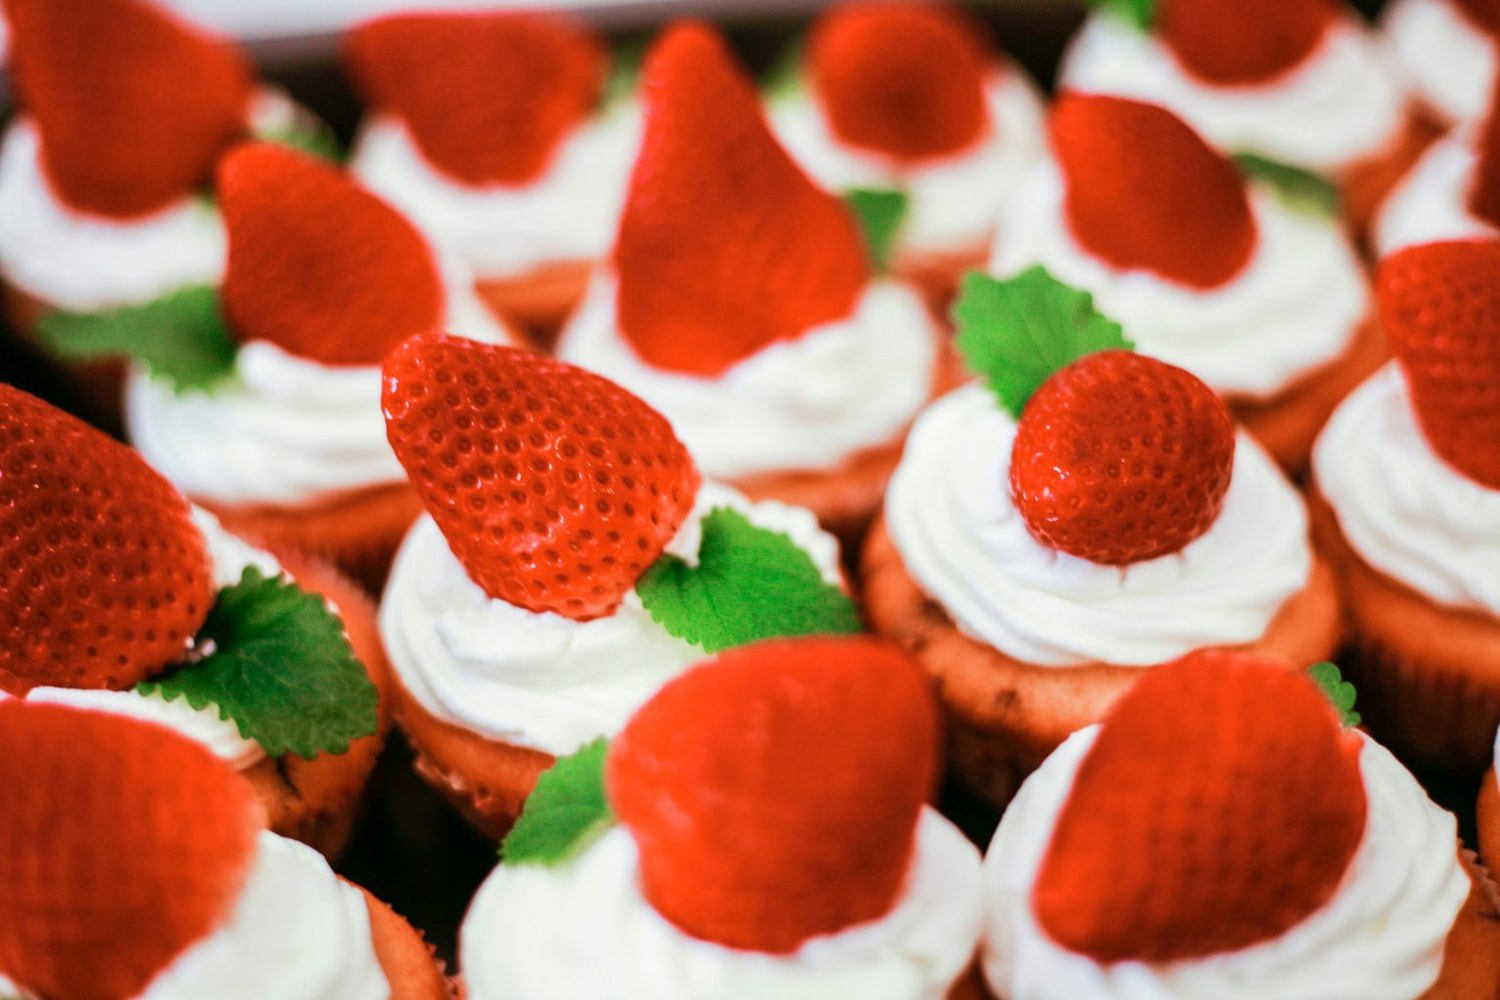 Vegan red velvet cupcakes